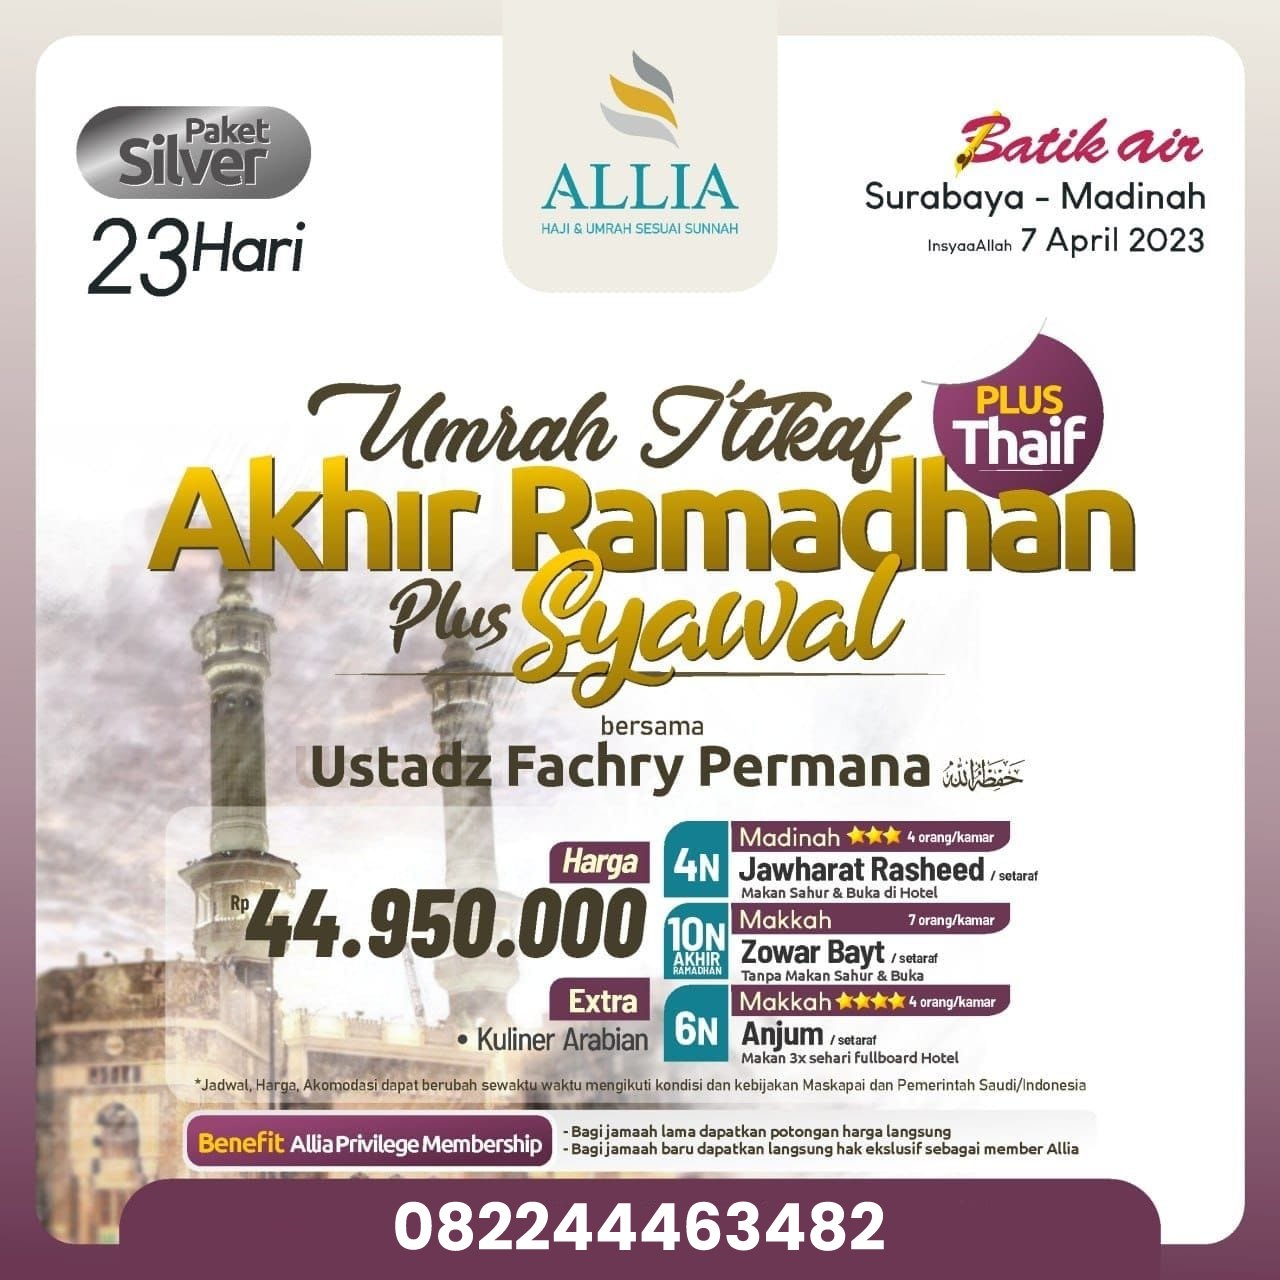 Paket Umroh Iktikaf Akhir Ramadhan bersama Allia Tour and Travel